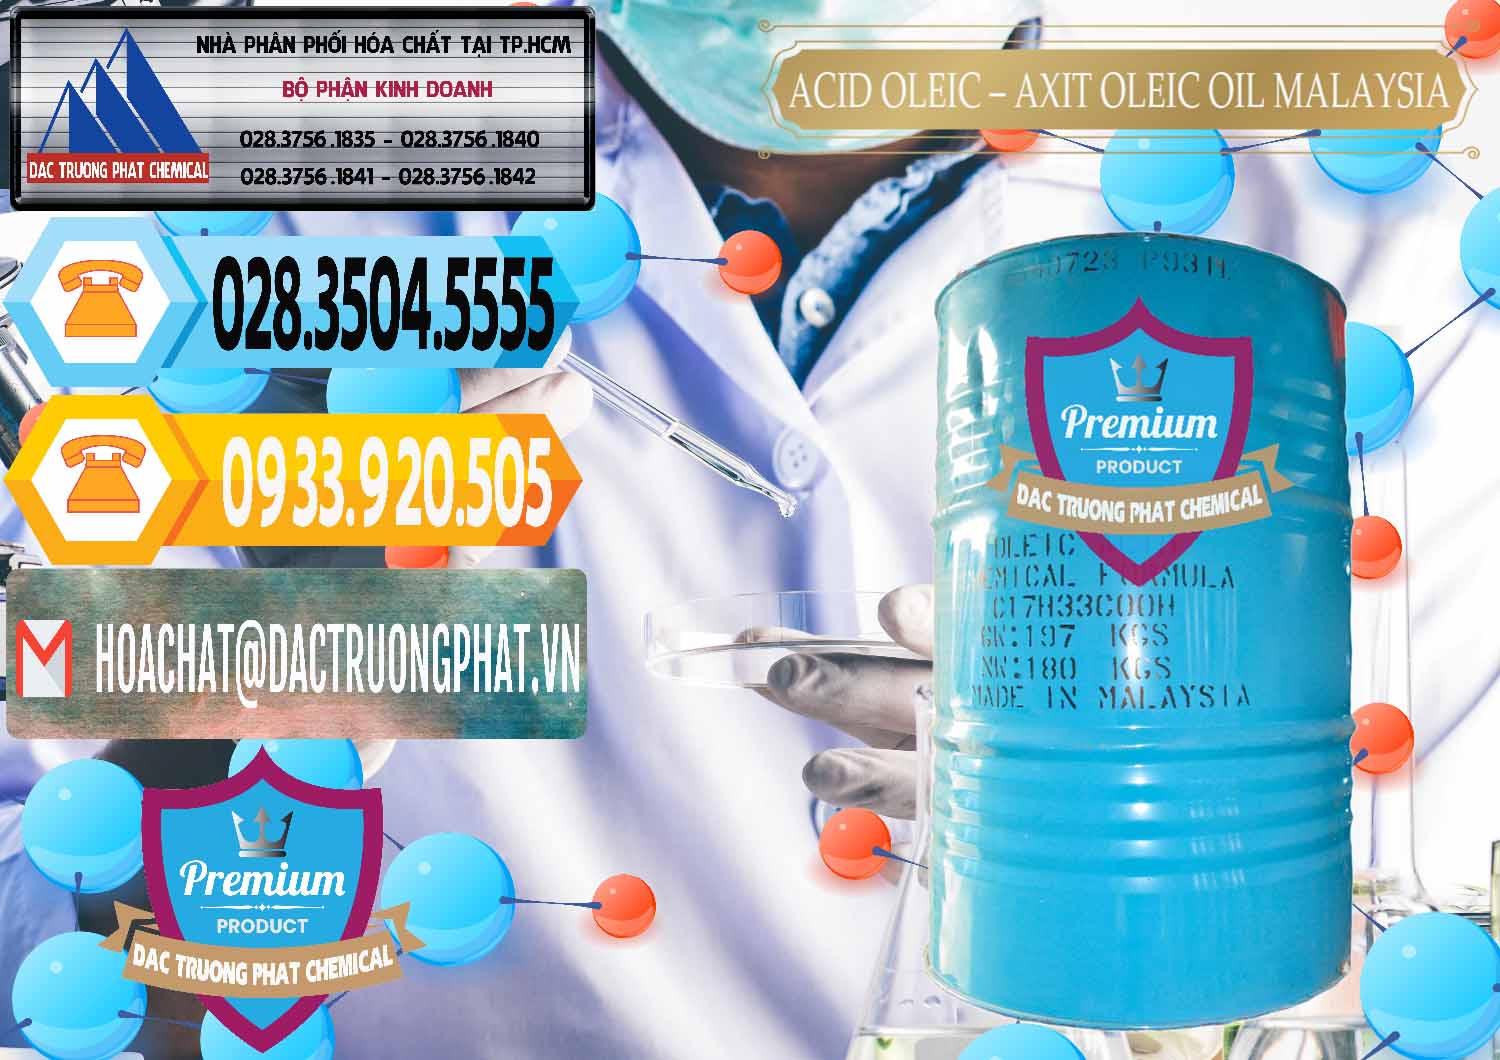 Đơn vị bán và cung ứng Acid Oleic – Axit Oleic Oil Malaysia - 0013 - Chuyên cung ứng - phân phối hóa chất tại TP.HCM - hoachattayrua.net